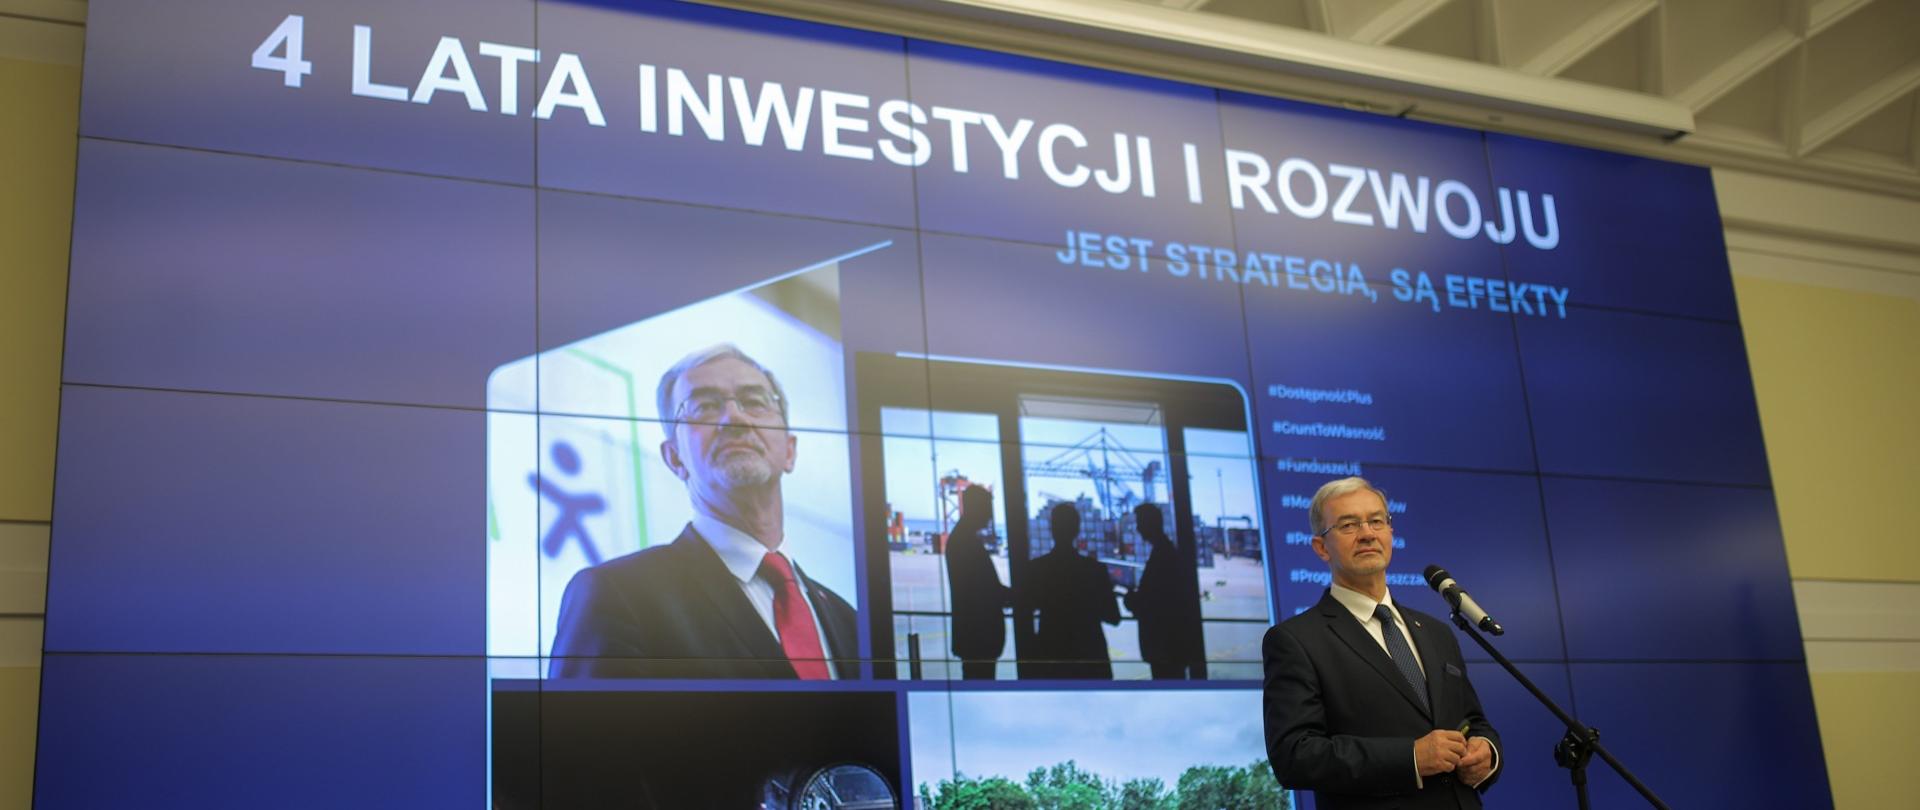 Minister Jerzy Kwieciński na scenie przy mikrofonie podczas konferencji, za nim ekran z grafiką ze zdjęciami związanymi z pracami ministerstwa oraz tytułem "4 lata inwestycji i rozwoju, jet strategia, są efekty"